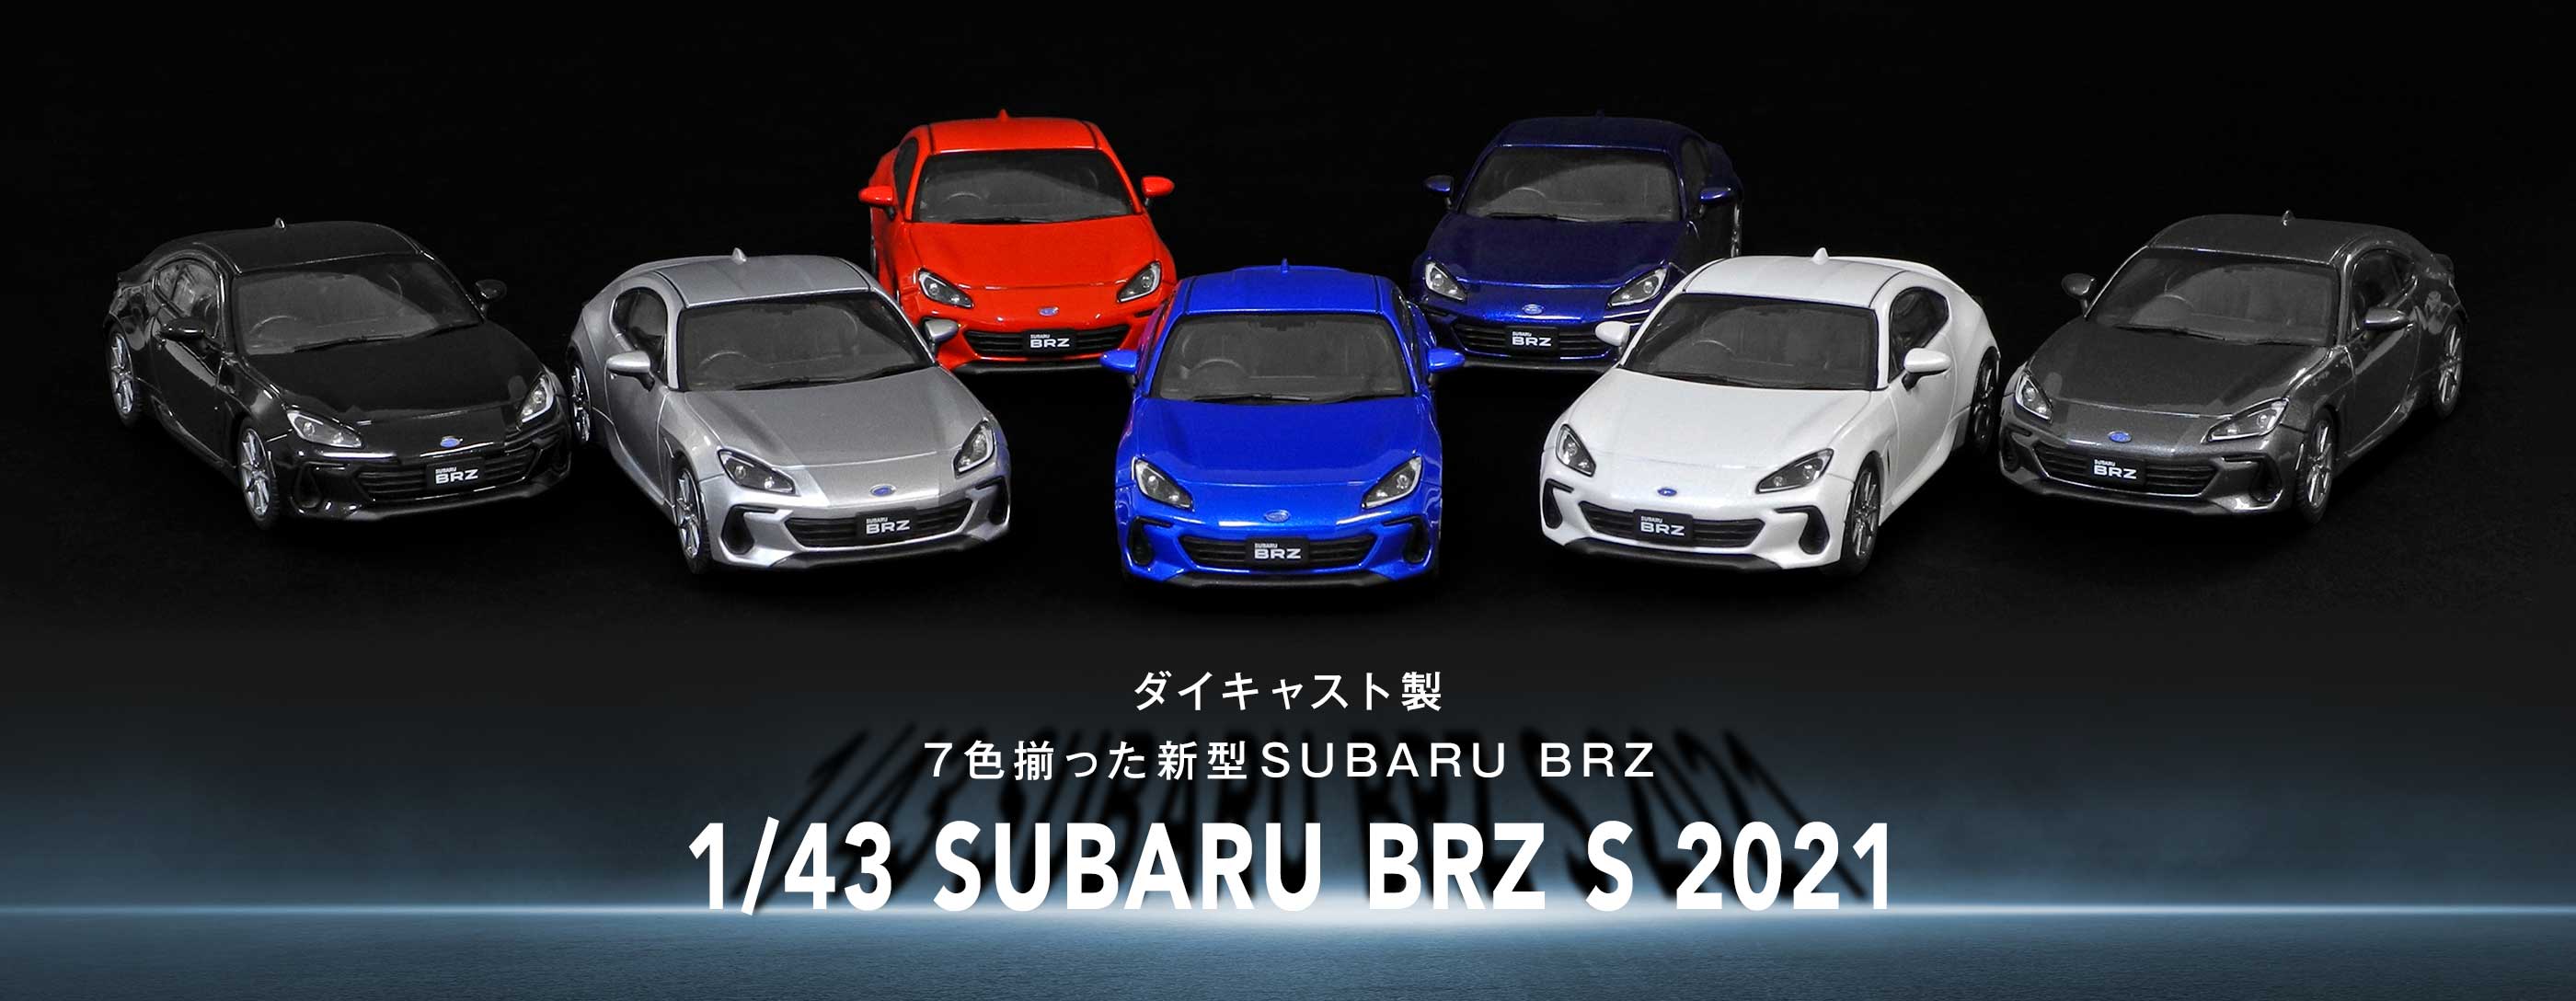 「1/43 SUBARU BRZ S 2021」ミニチュアカーが7色揃って新登場！